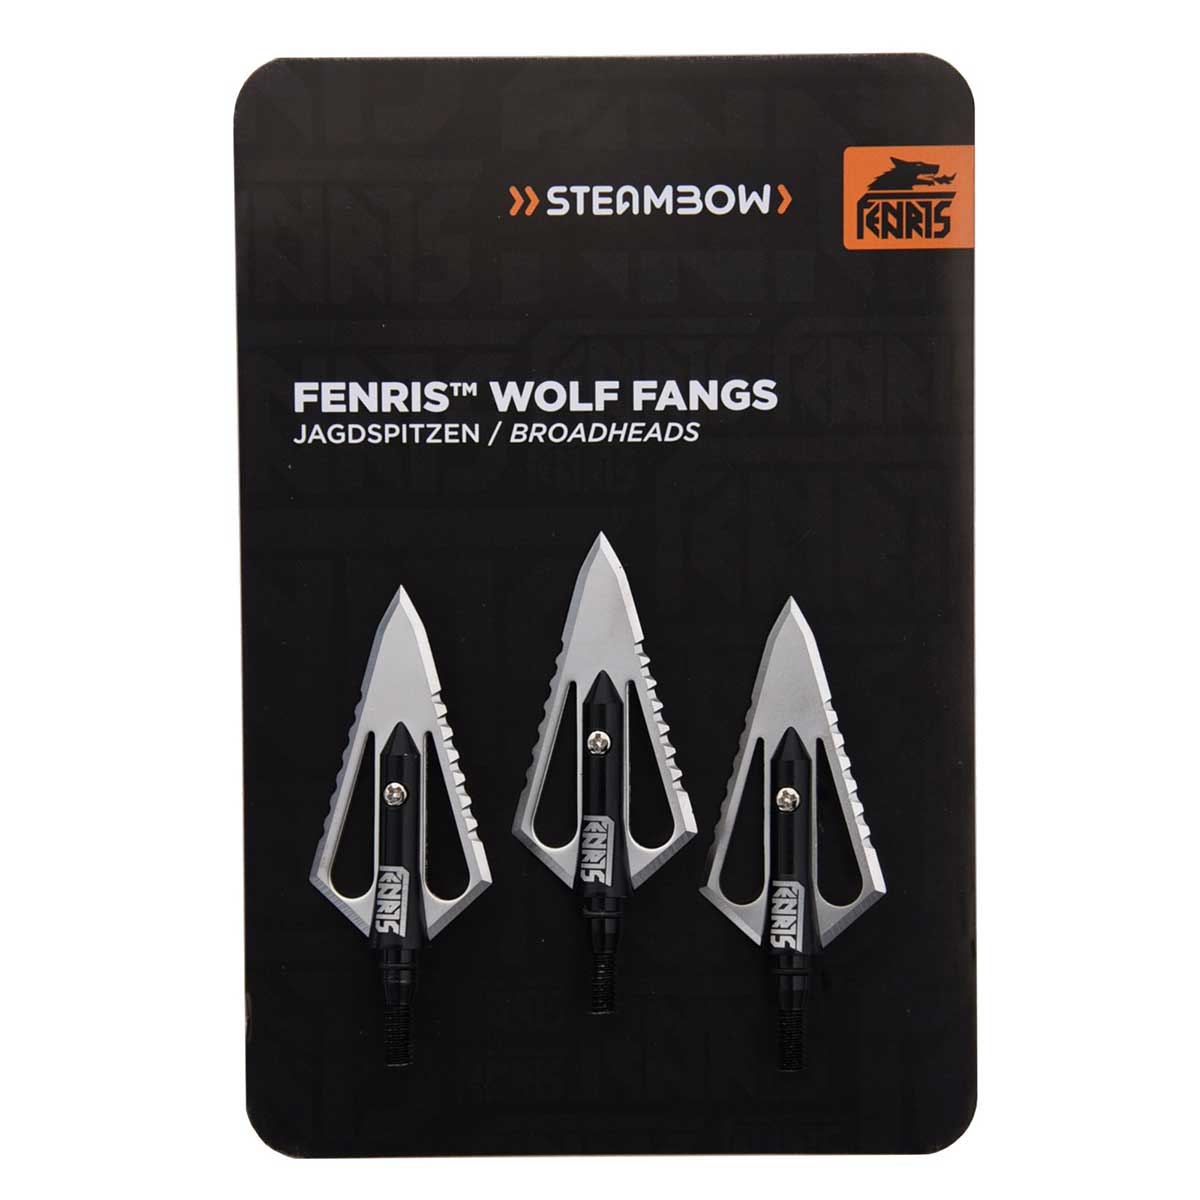 FENRIS Punte da caccia “Wolf Fangs” – confezione da 3 pezzi